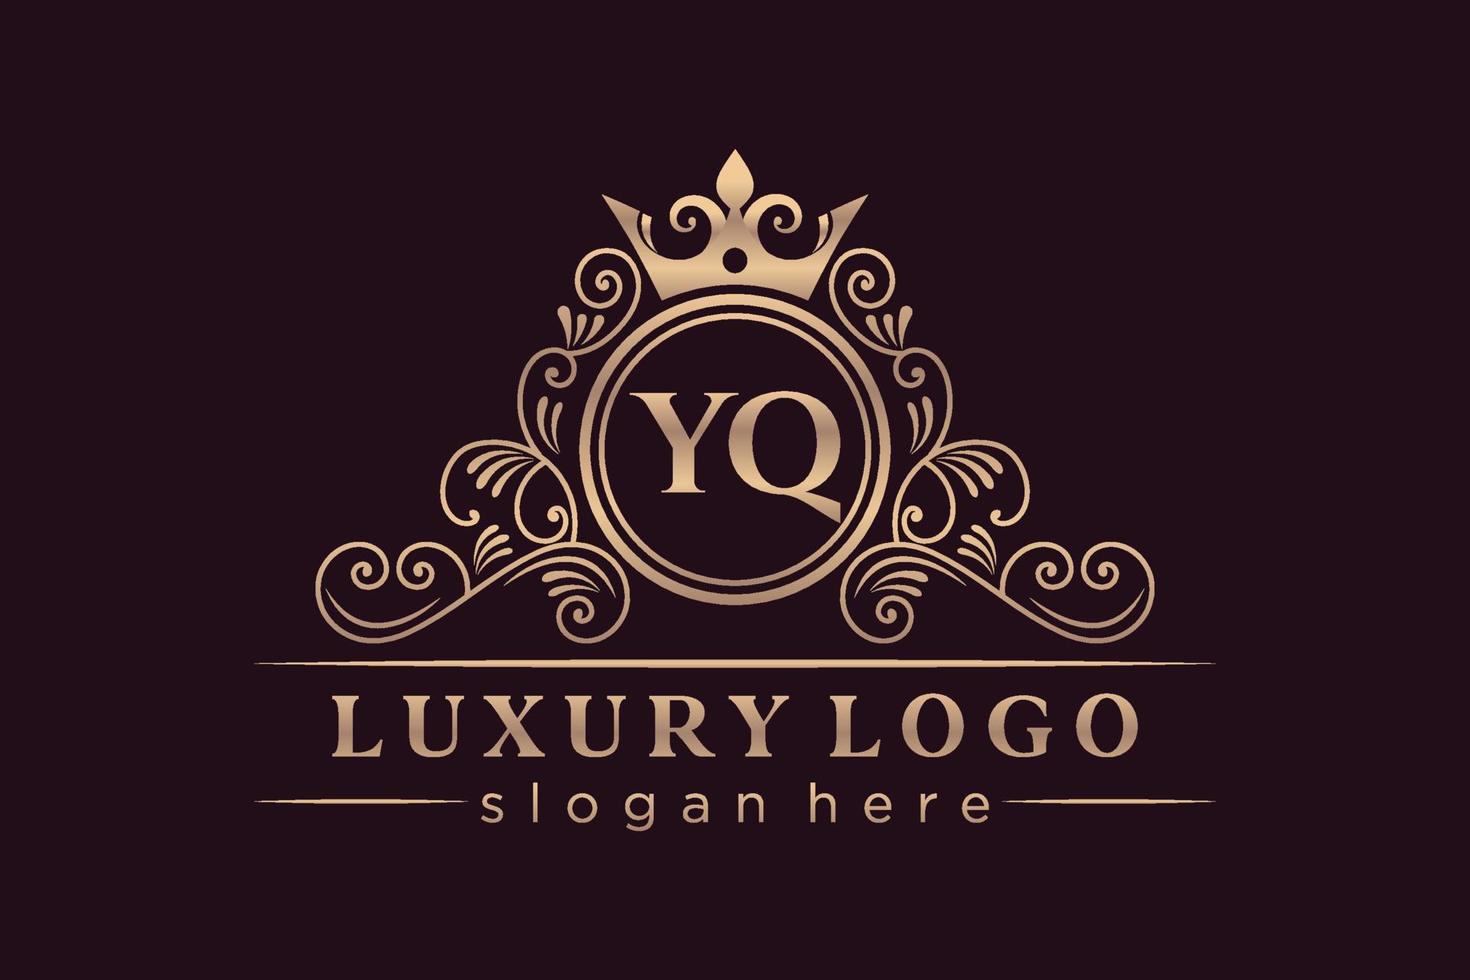 YQ Initial Letter Gold calligraphic feminine floral hand drawn heraldic monogram antique vintage style luxury logo design Premium Vector